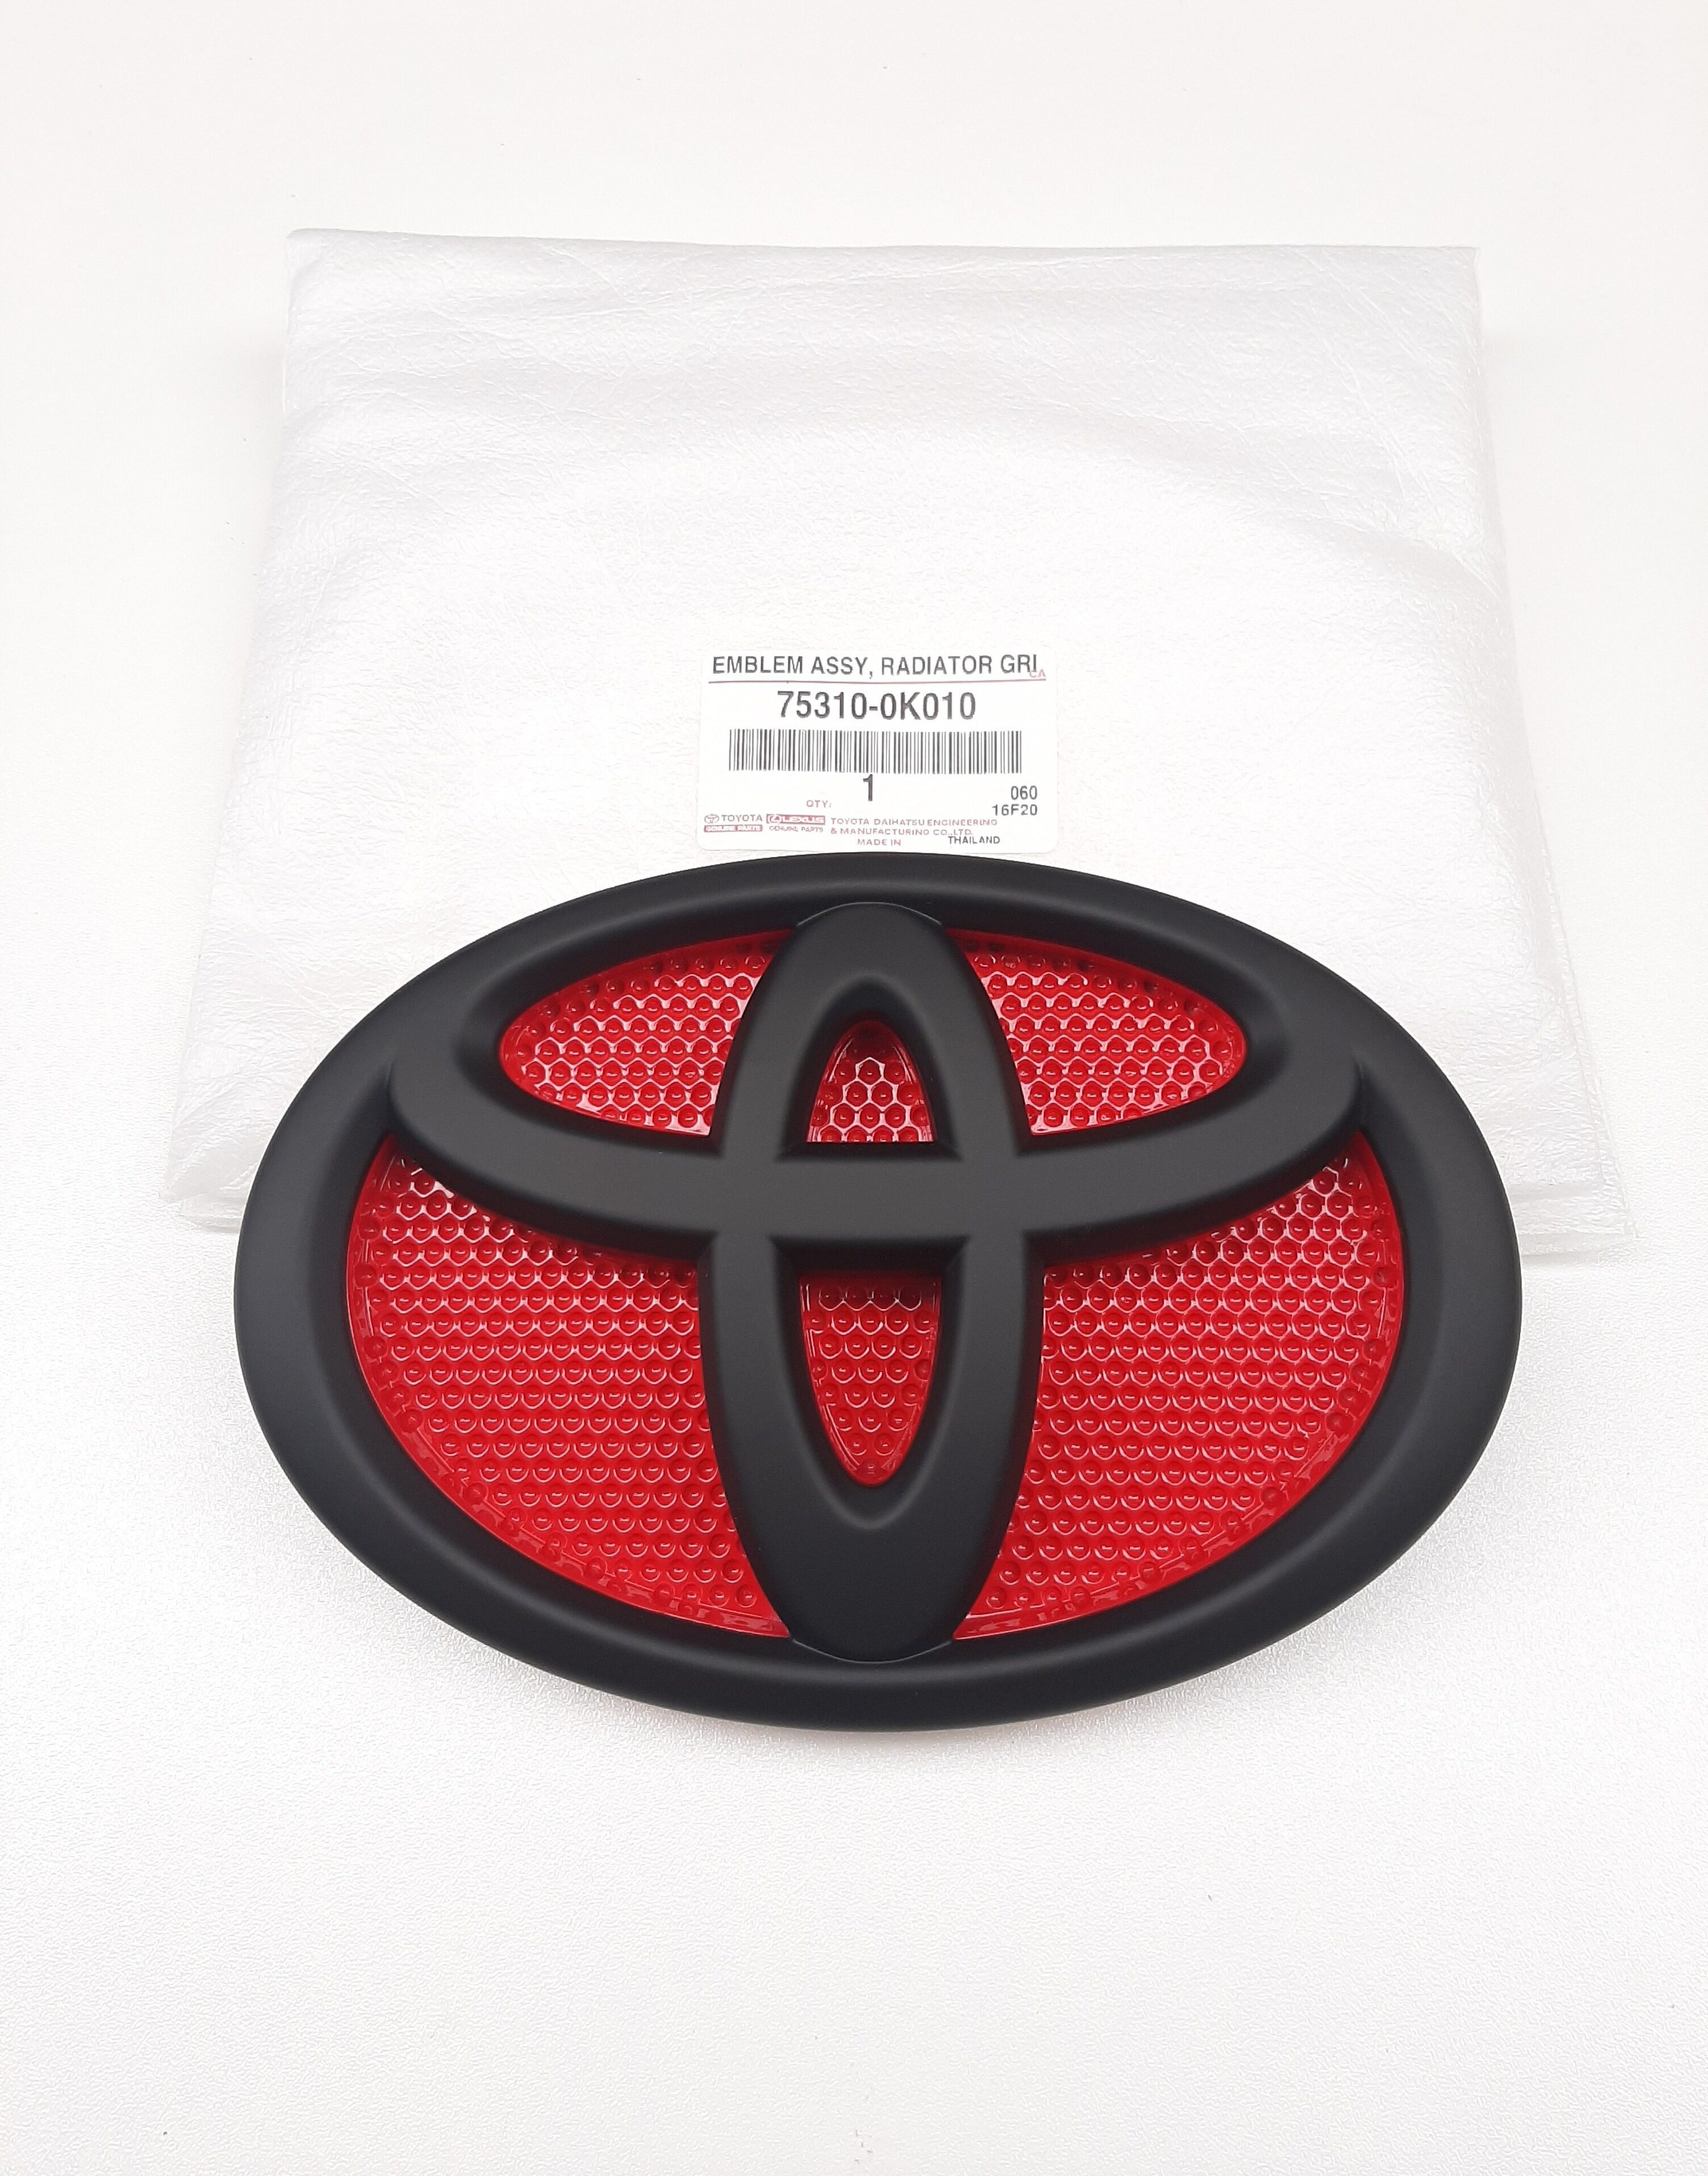 โลโก้ โตโยต้าสีดำด้าน พื้นหลังสีแดง ใส่กับ ไฮลักษ์ รีโว้  รีโว้ร๊อคโค่ ฟอจูนเนอร์  2015-2020 สำหรับ Toyota hilux revo rocco fortuner 2015-2020 OEM